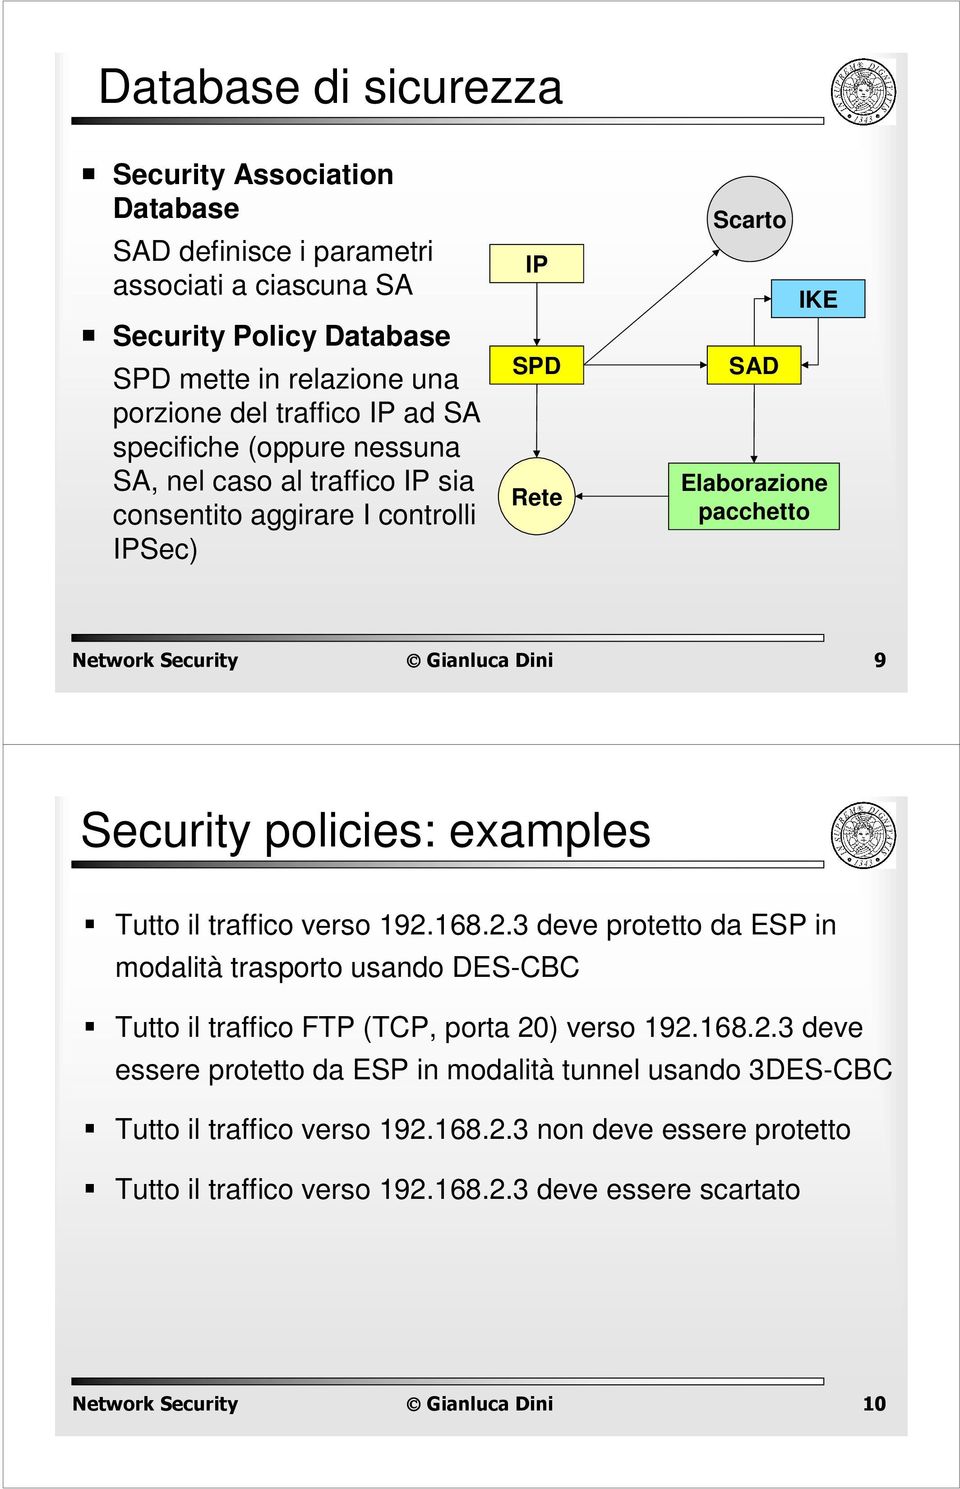 Security policies: examples Tutto il traffico verso 192.168.2.3 deve protetto da ESP in modalità trasporto usando DES-CC Tutto il traffico FTP (TCP, porta 20) verso 192.168.2.3 deve essere protetto da ESP in modalità tunnel usando 3DES-CC Tutto il traffico verso 192.